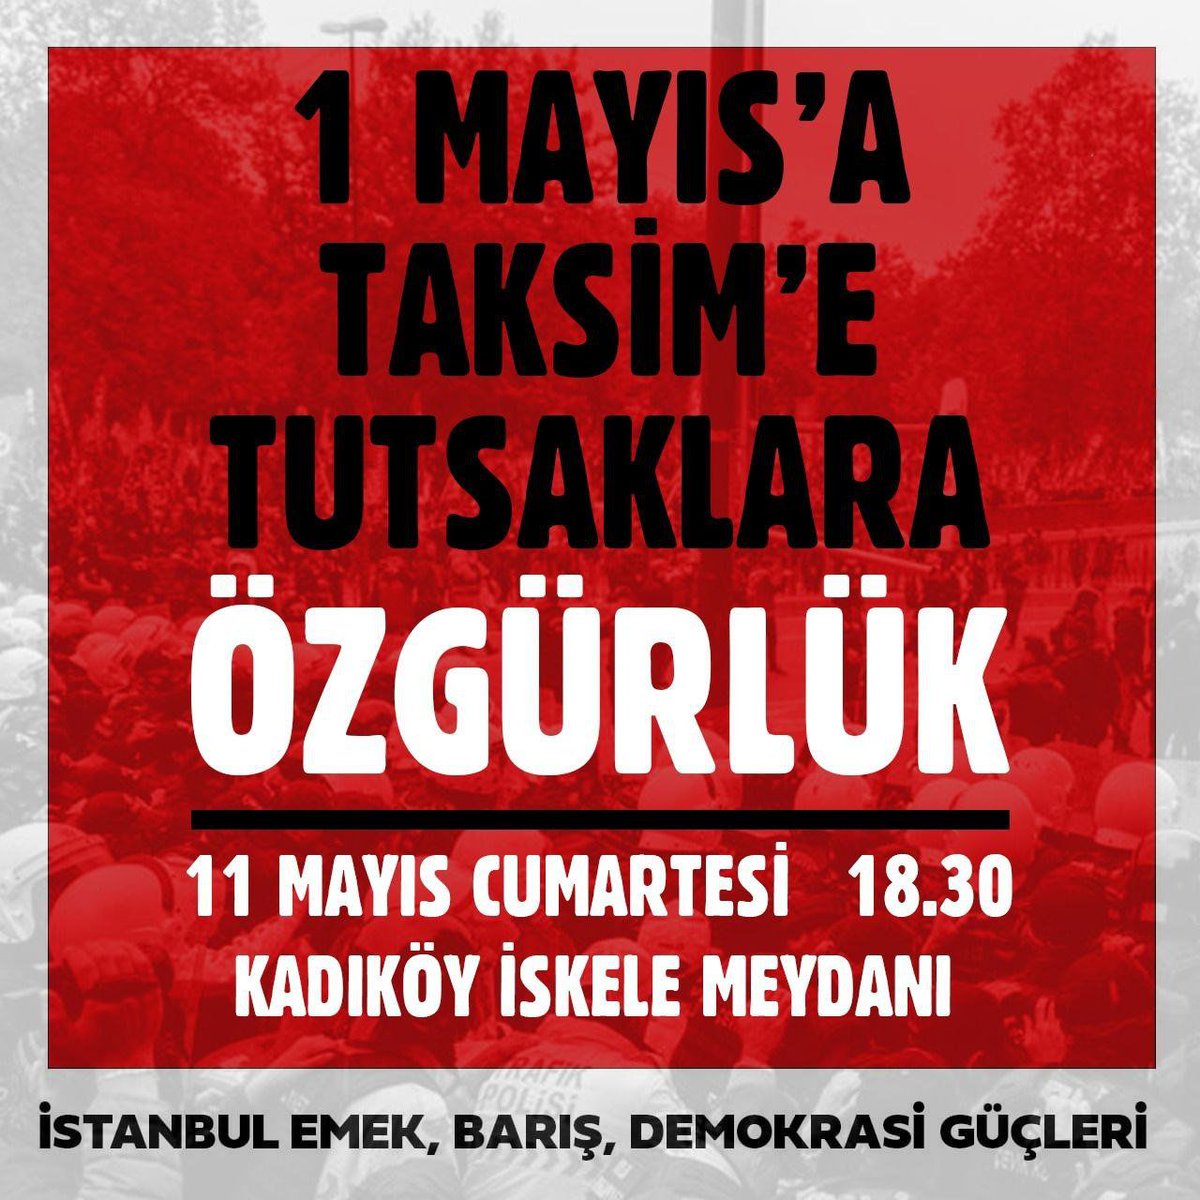 1 Mayıs’ta Taksim’e yürüme iradesiyle direndikleri için tutuklanan, gözaltında işkenceye maruz kalan, regl oldukları halde ped ihtiyacı karşılanmayan kadınların yanındayız. Tutuklu 50 kişinin ve tüm siyasi mahpusların serbest bırakılması talebiyle 11 Mayıs 18.30’da Kadıköydeyiz.